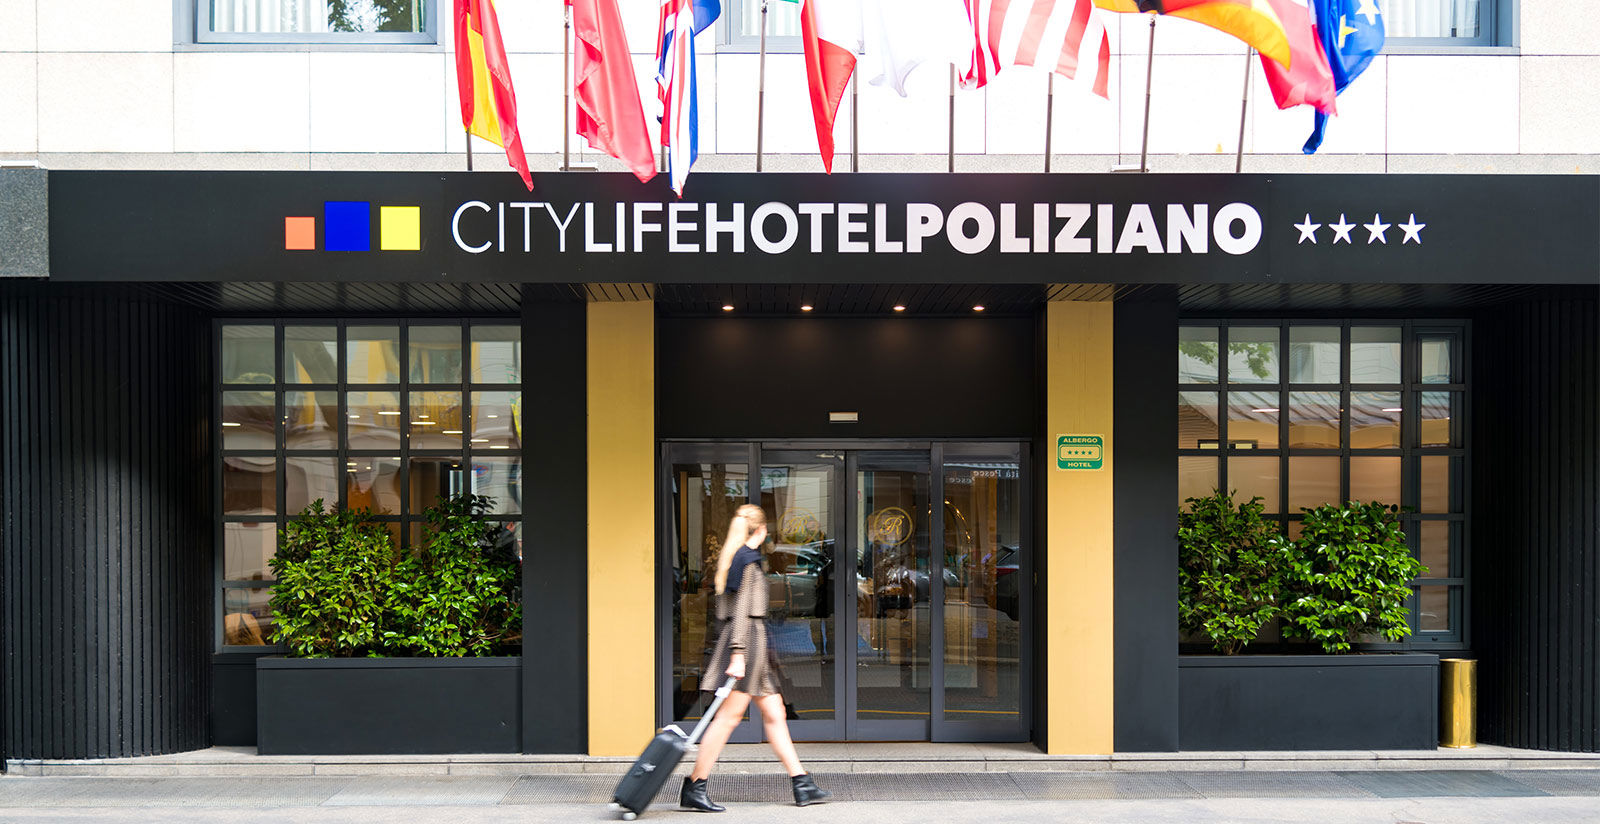 City Life Hotel Poliziano 5